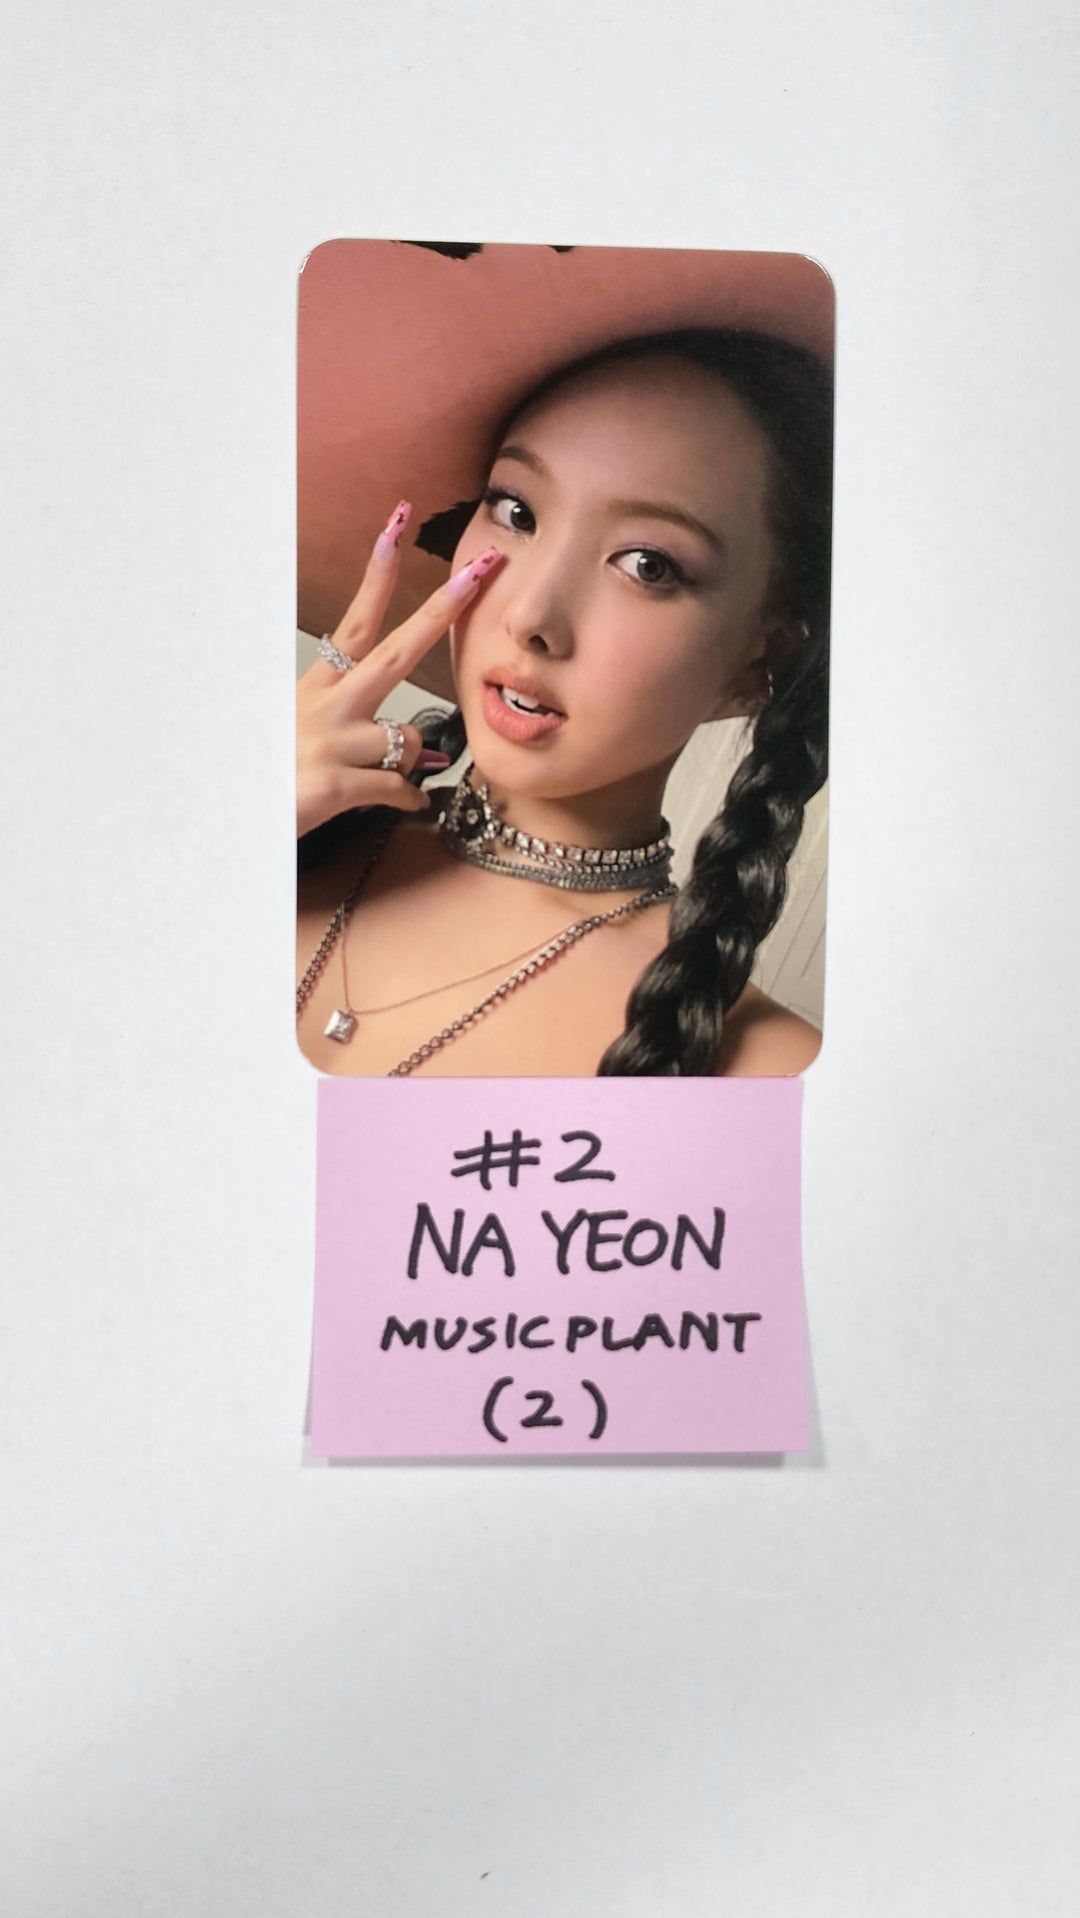 ナヨン「IM NAYEON」 - Music Plant 抽選イベントフォトカード、2カット写真